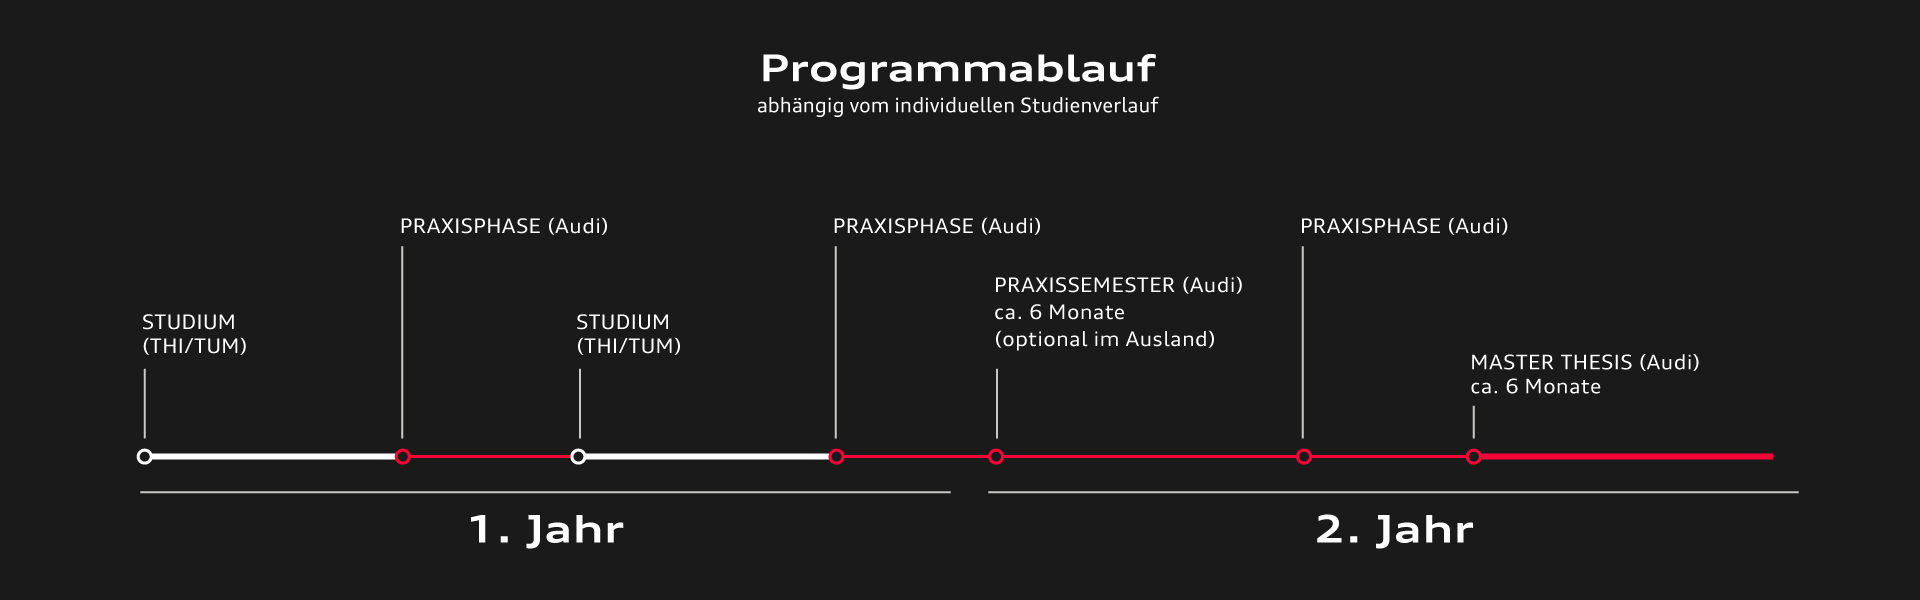 Der Programmablauf des dualen Masterstudiums von Audi an der Hochschule wird vorgestellt